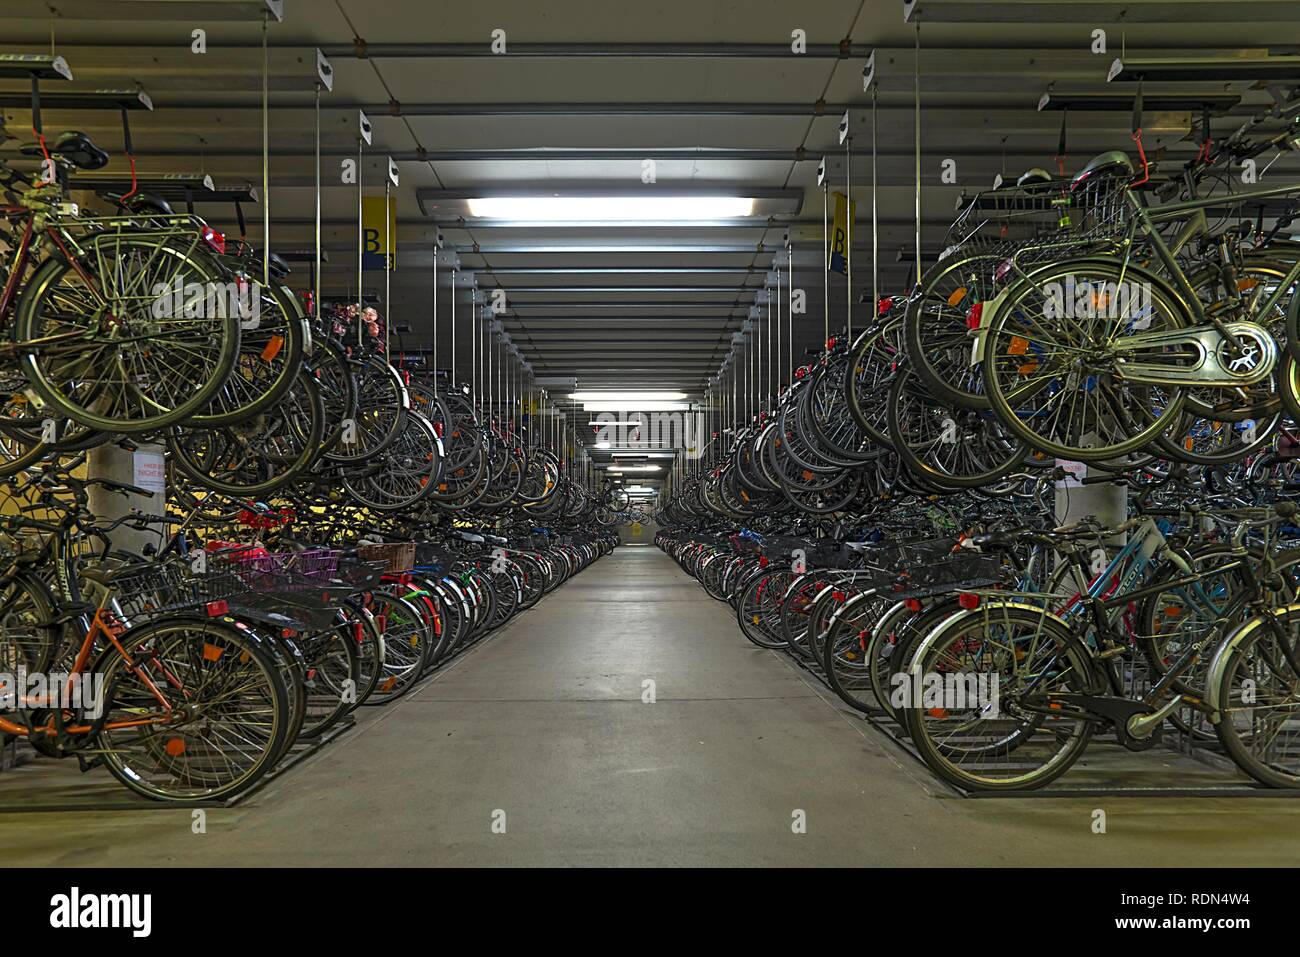 Fahrrad Garage, Münster, Nordrhein-Westfalen, Deutschland Stockfotografie -  Alamy